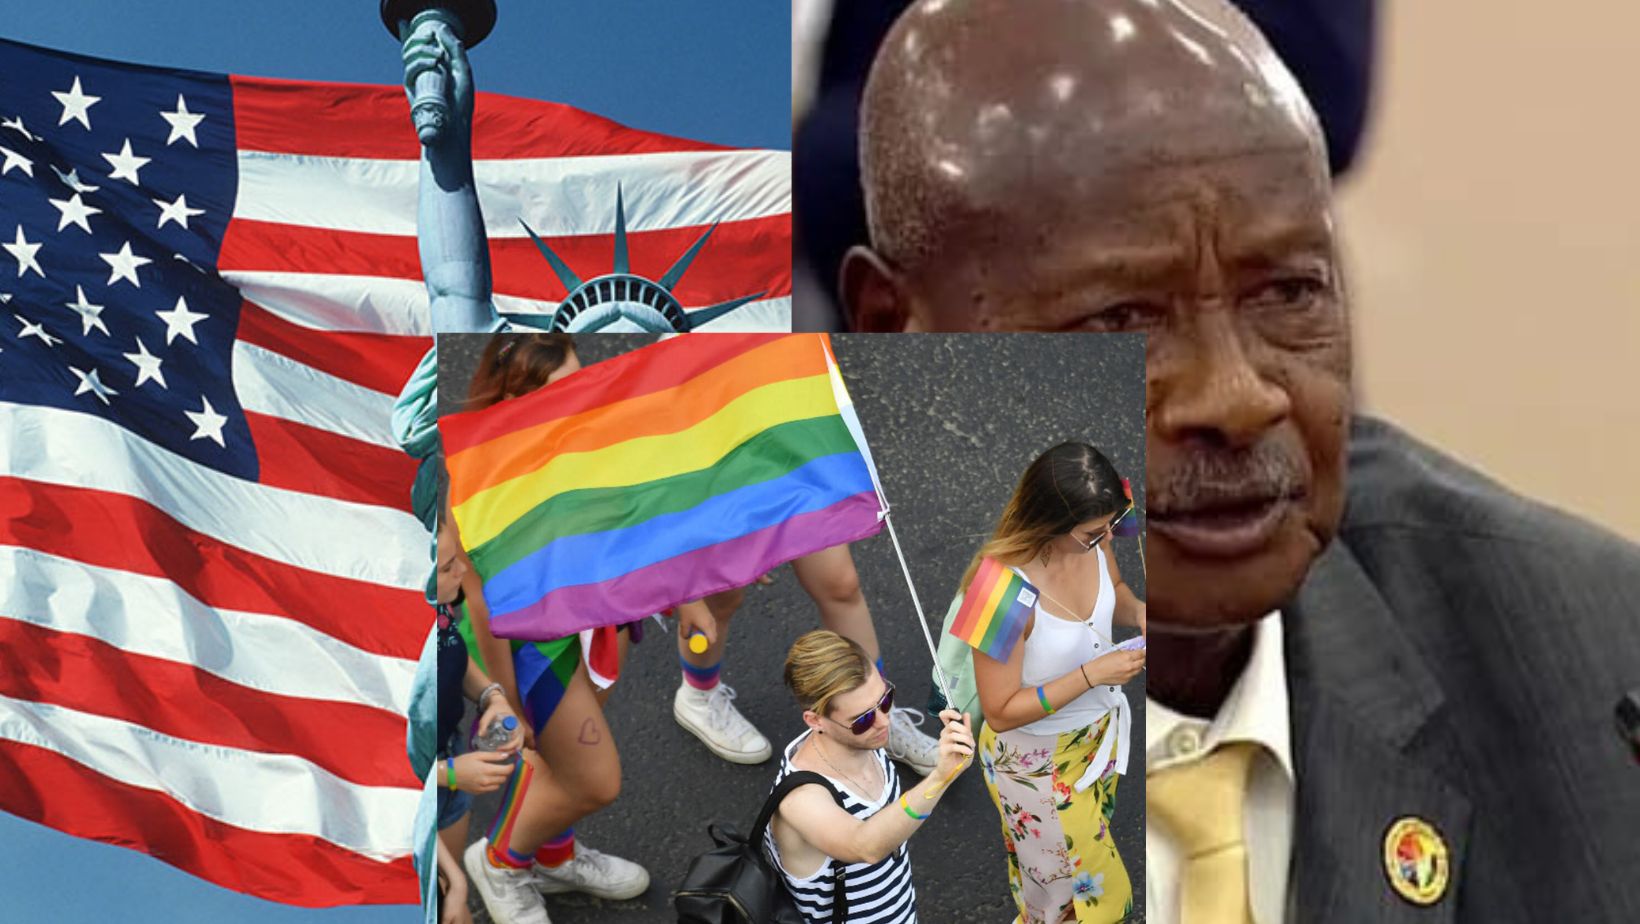 L’Ouganda évincé du programme commercial AGOA pour avoir dit “non” au mouvement Homosexuel (LGBT) : les USA “se surestiment”, dit Museveni